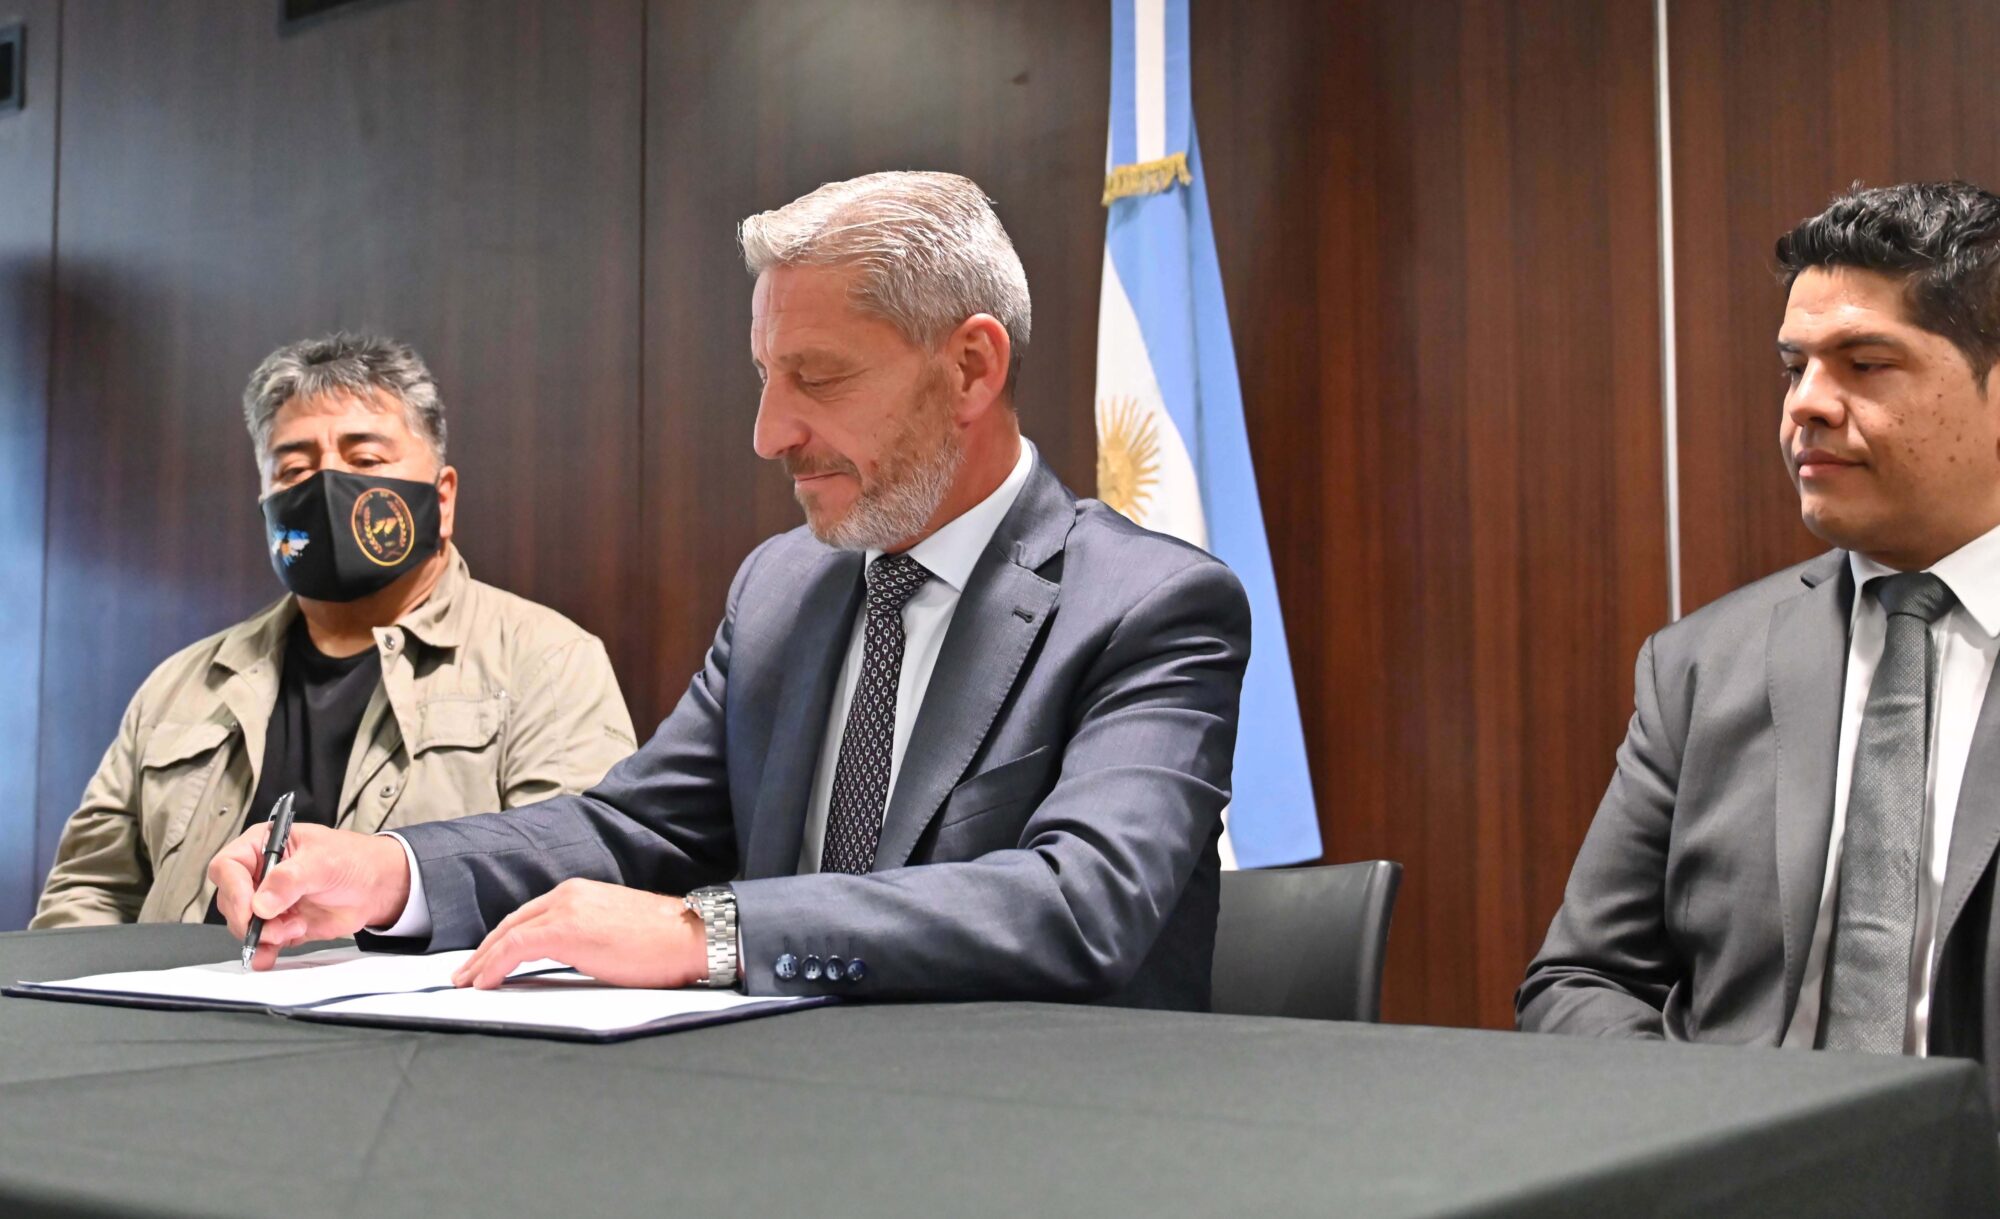 El gobernador firmó el decreto para el cumplimiento de la Ley de ingreso al Estado de familiares directos de ex combatientes de Malvinas